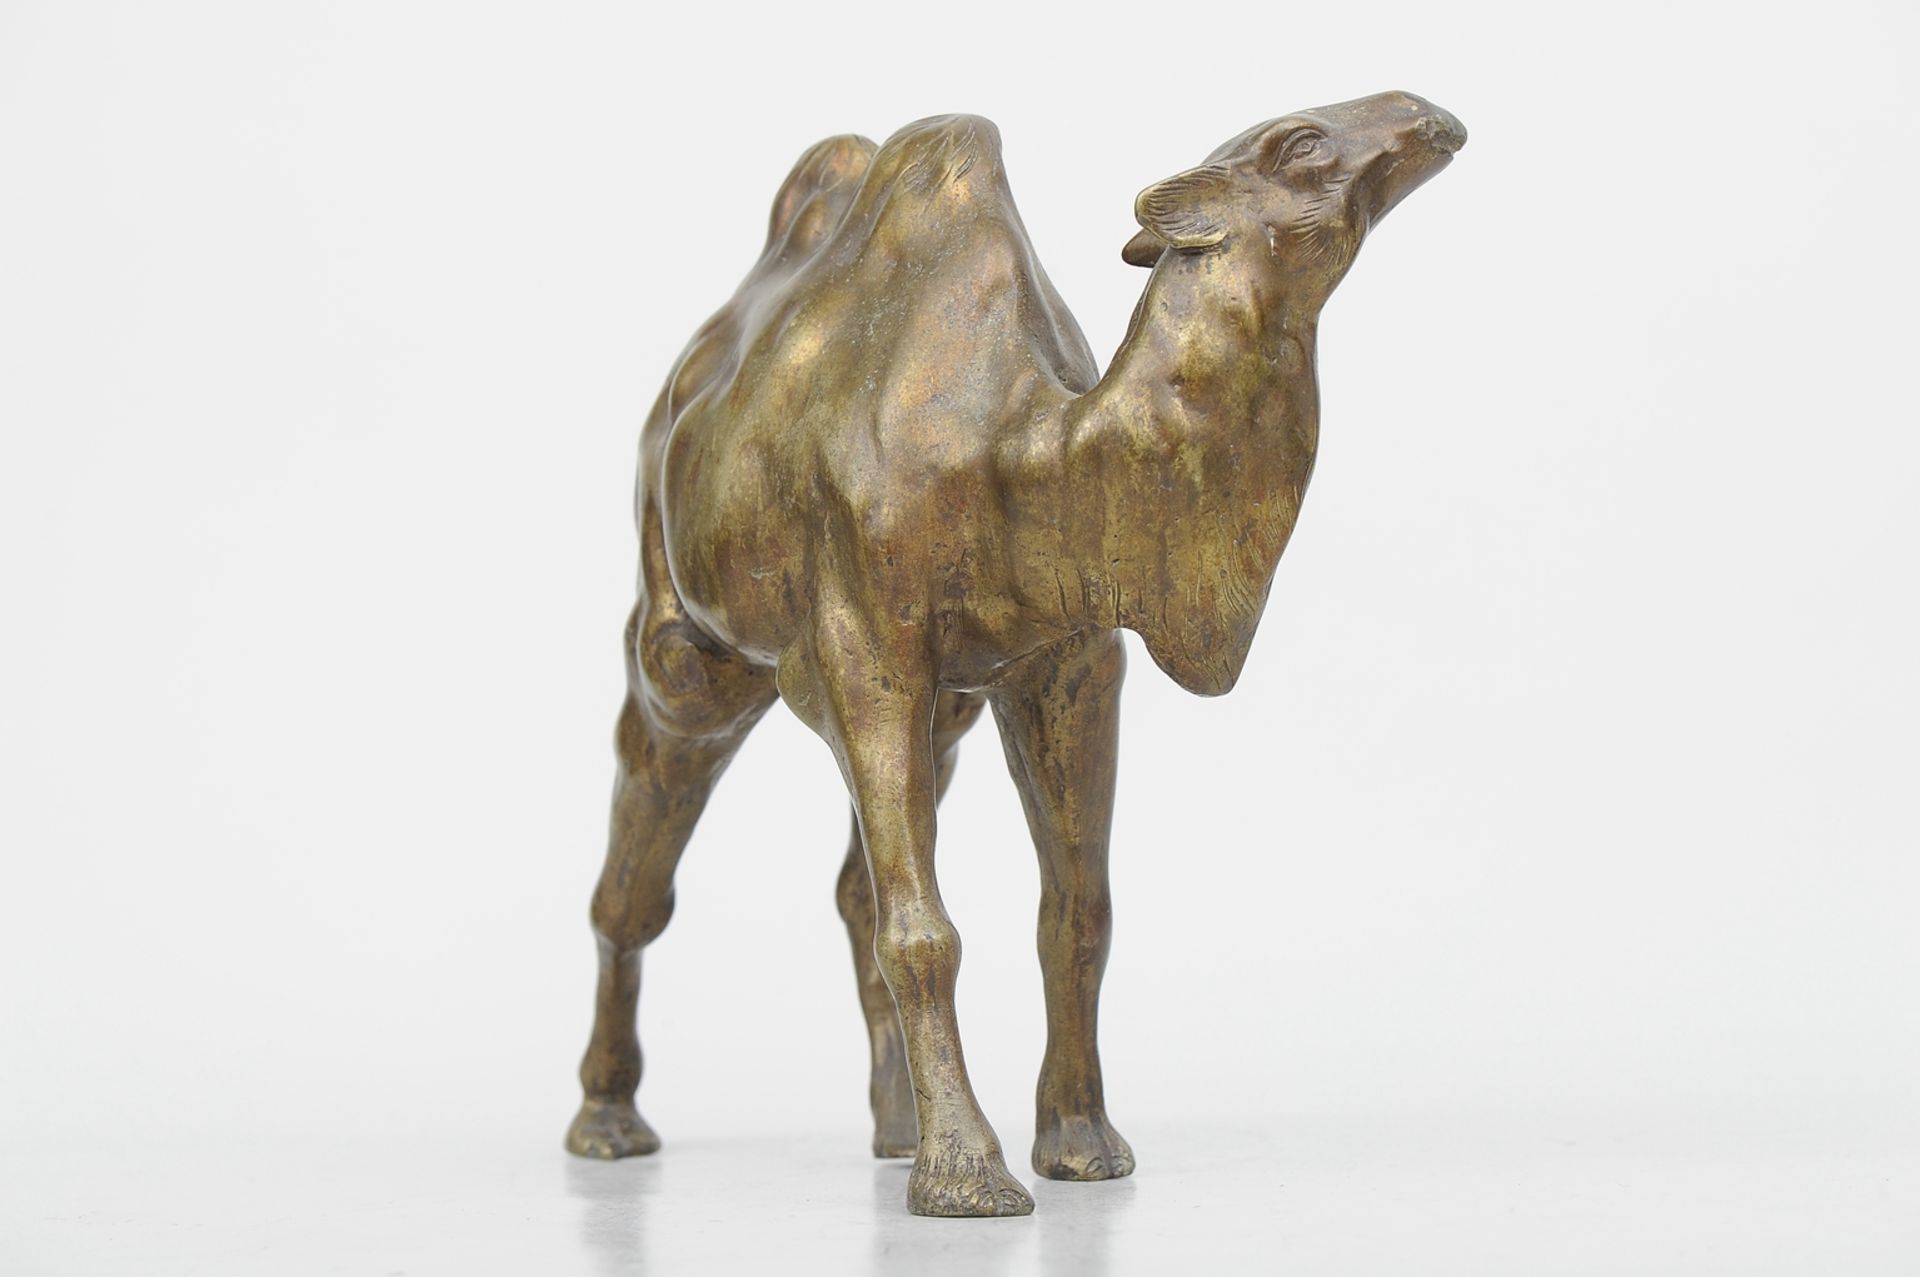 "Schreitendes Kamel" - Bronzeguss mit gold-brauner Patina, ca. 22,5 x 26 cm, unter 2 Hufen gemarkt